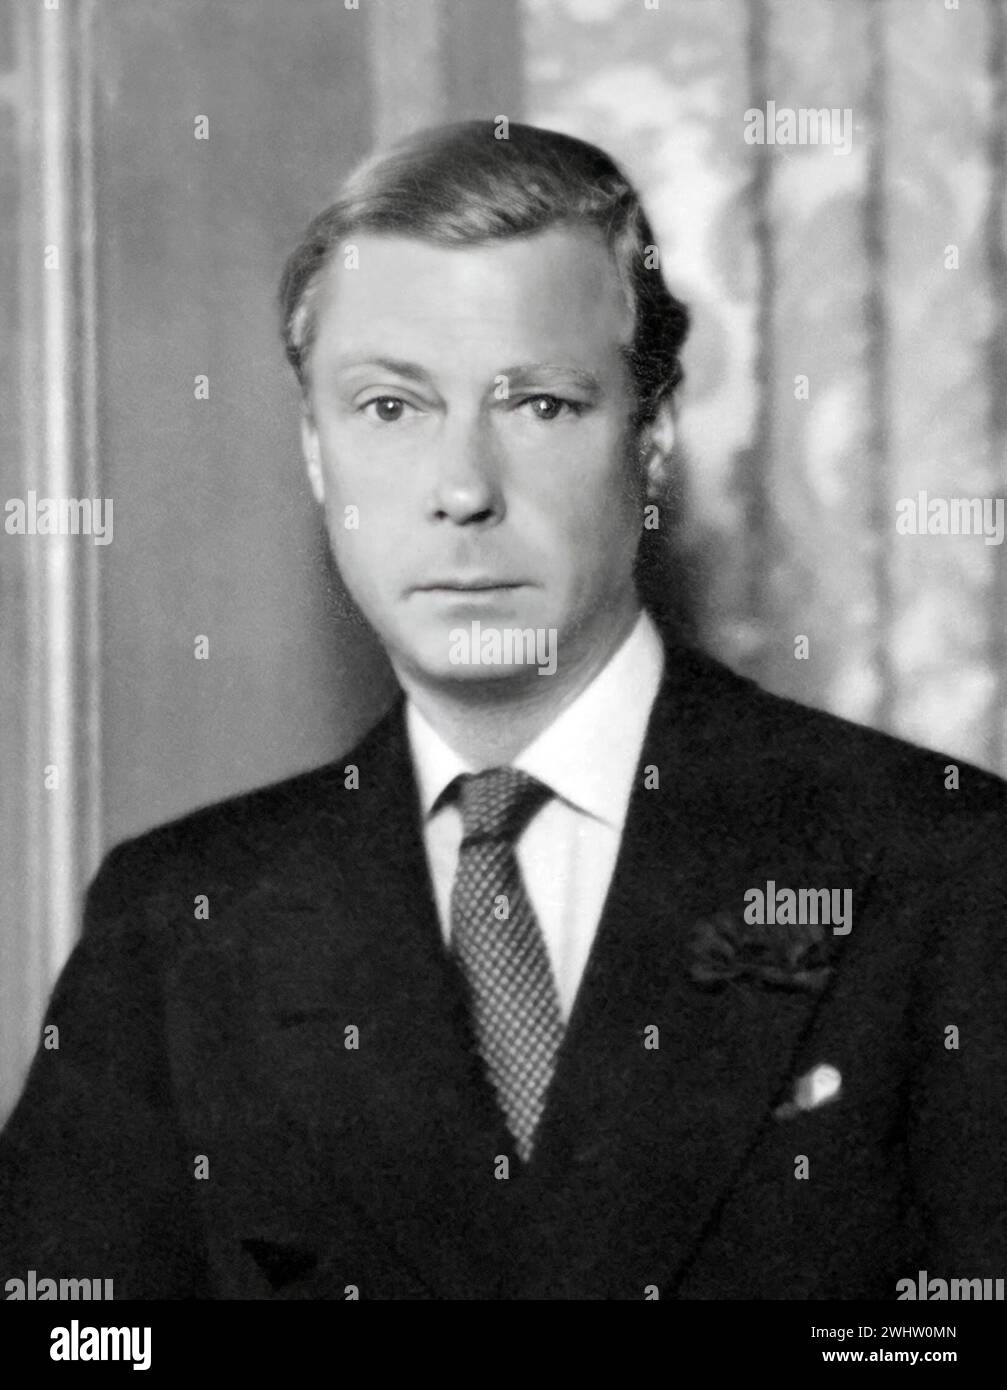 Herzog von Windsor. Porträt von König Eduard VIII., Herzog von Windsor (1894–1972), um 1934 Stockfoto